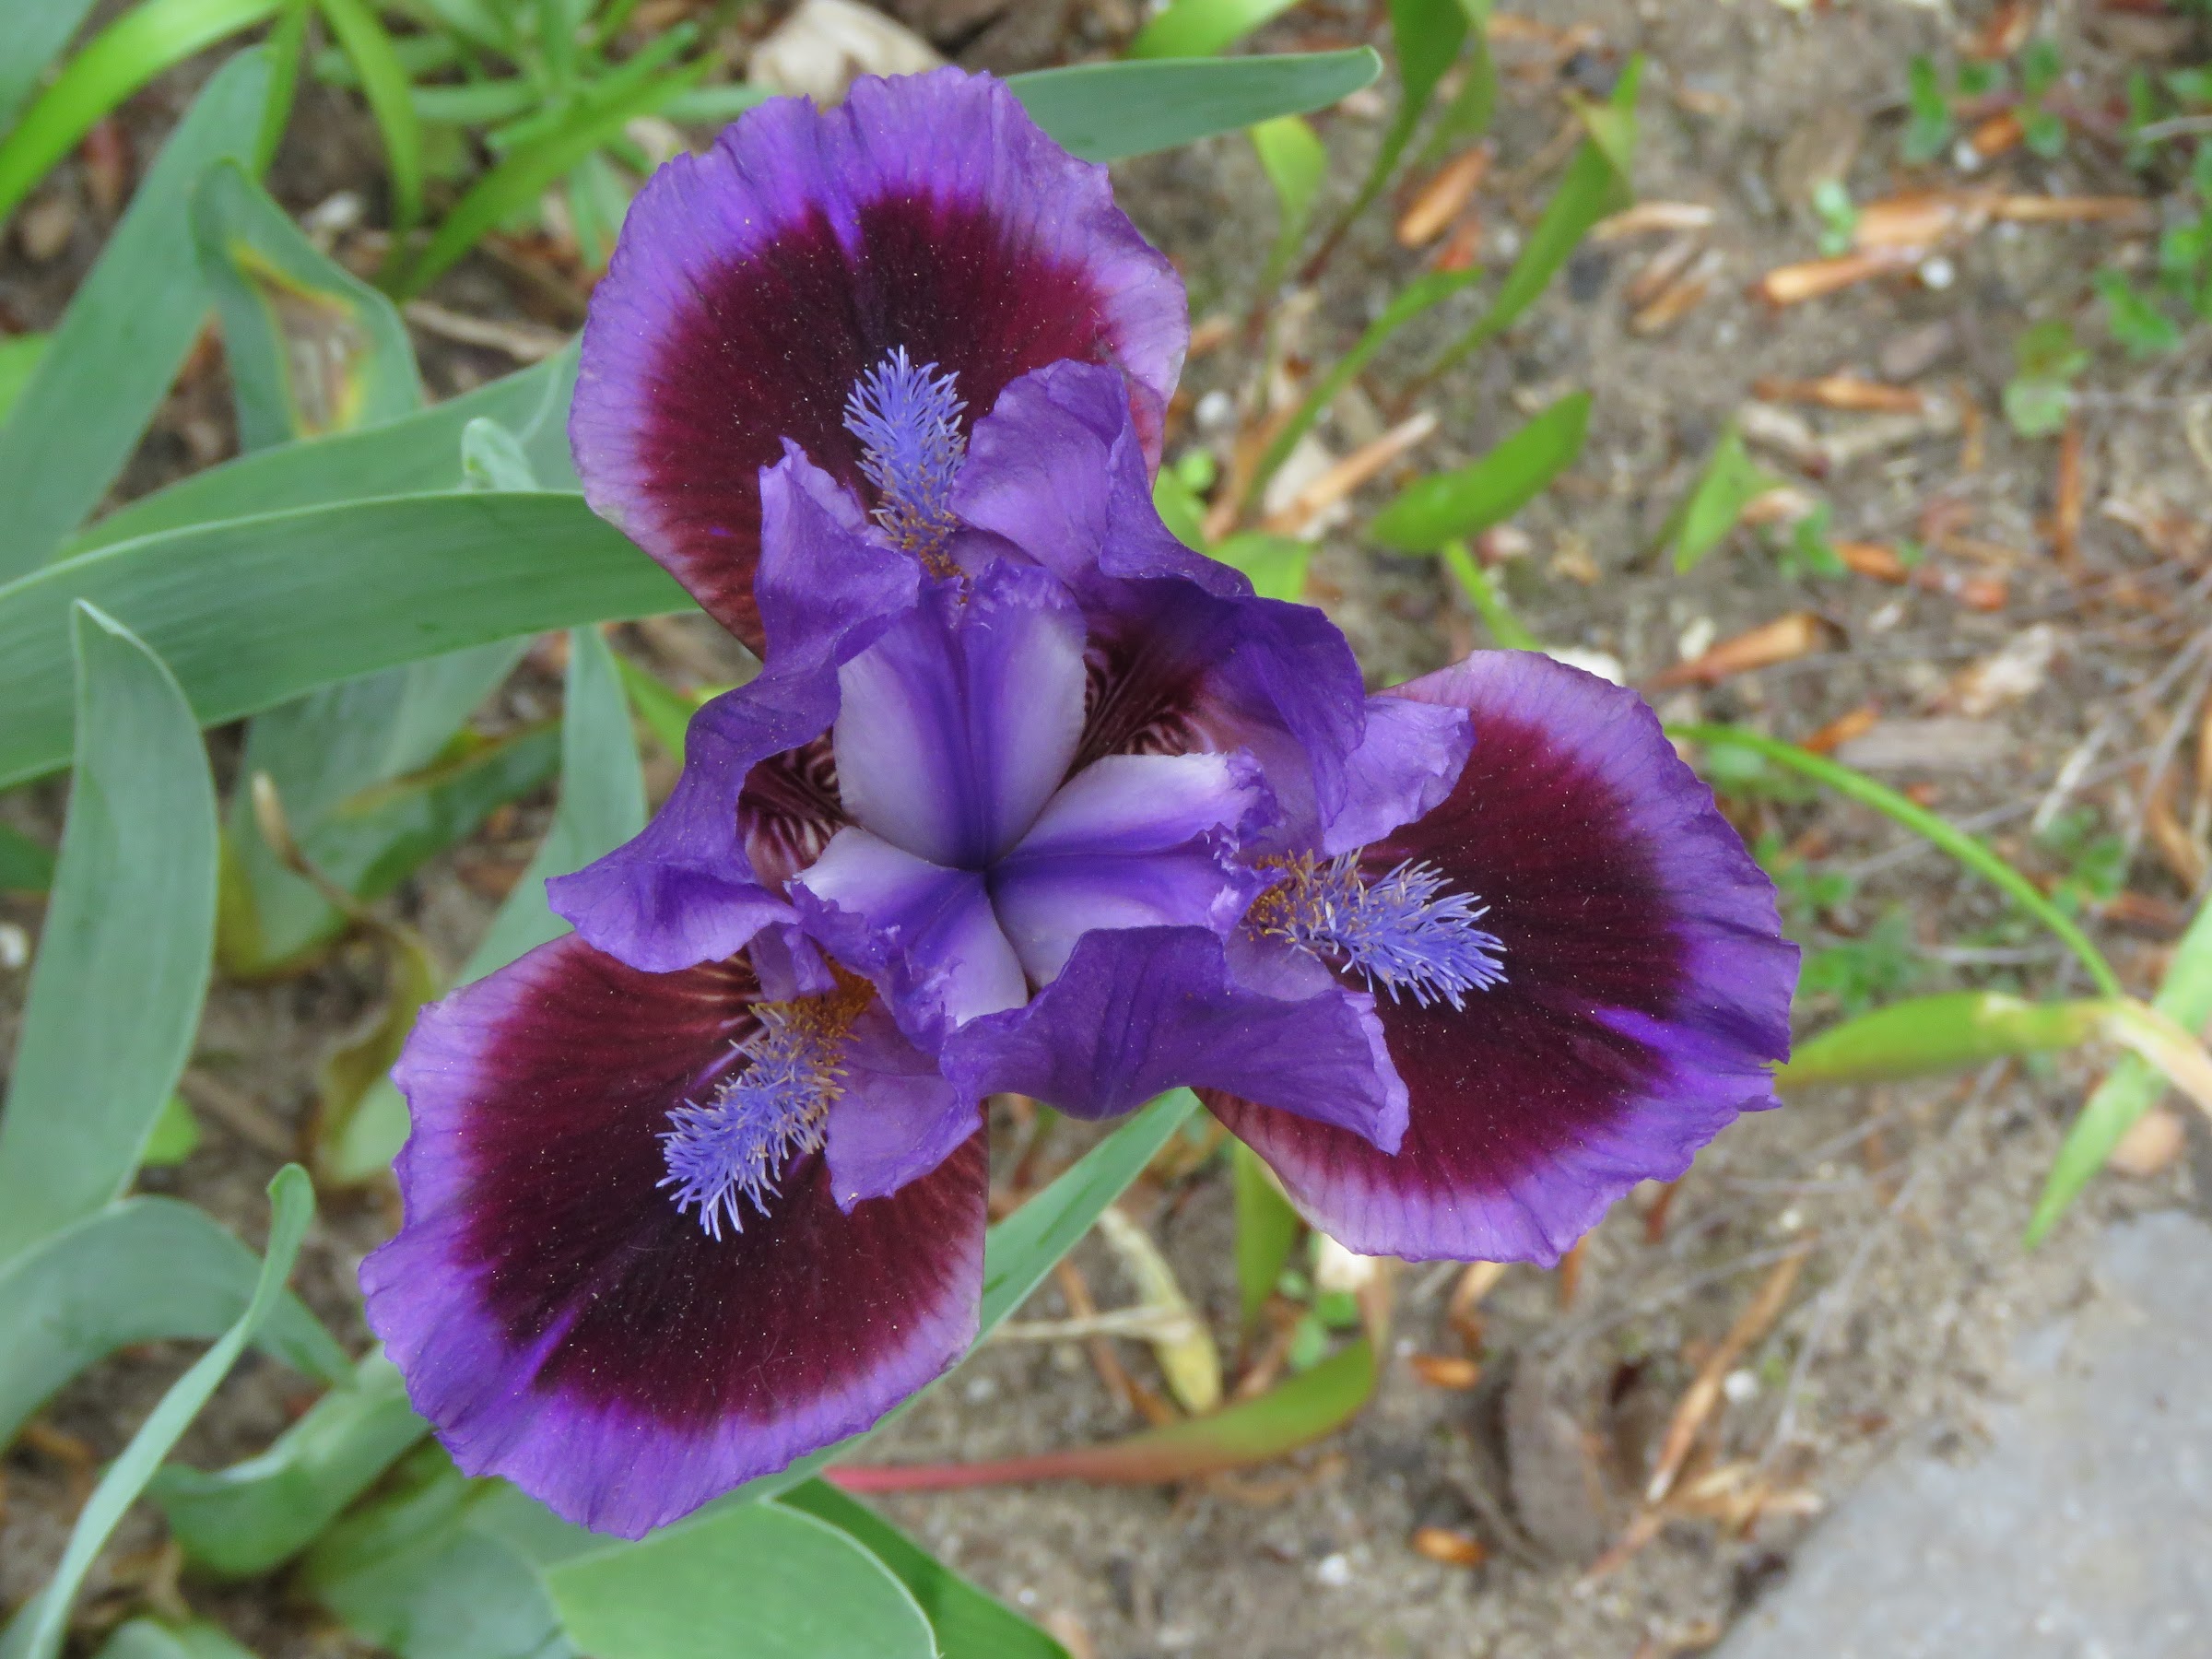 Iris nain, Iris pumila 'Autumn Jester'